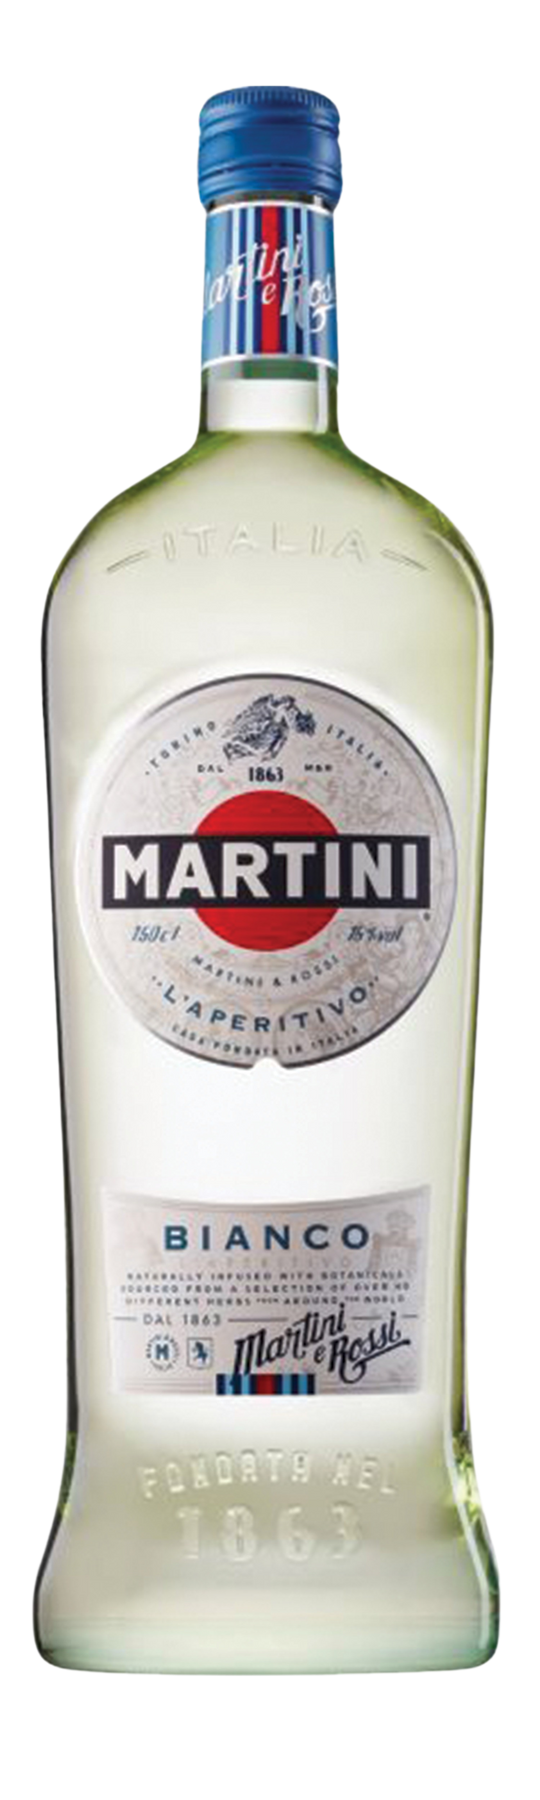 Martini Bianco 15% 150cl Vermouth di Torino